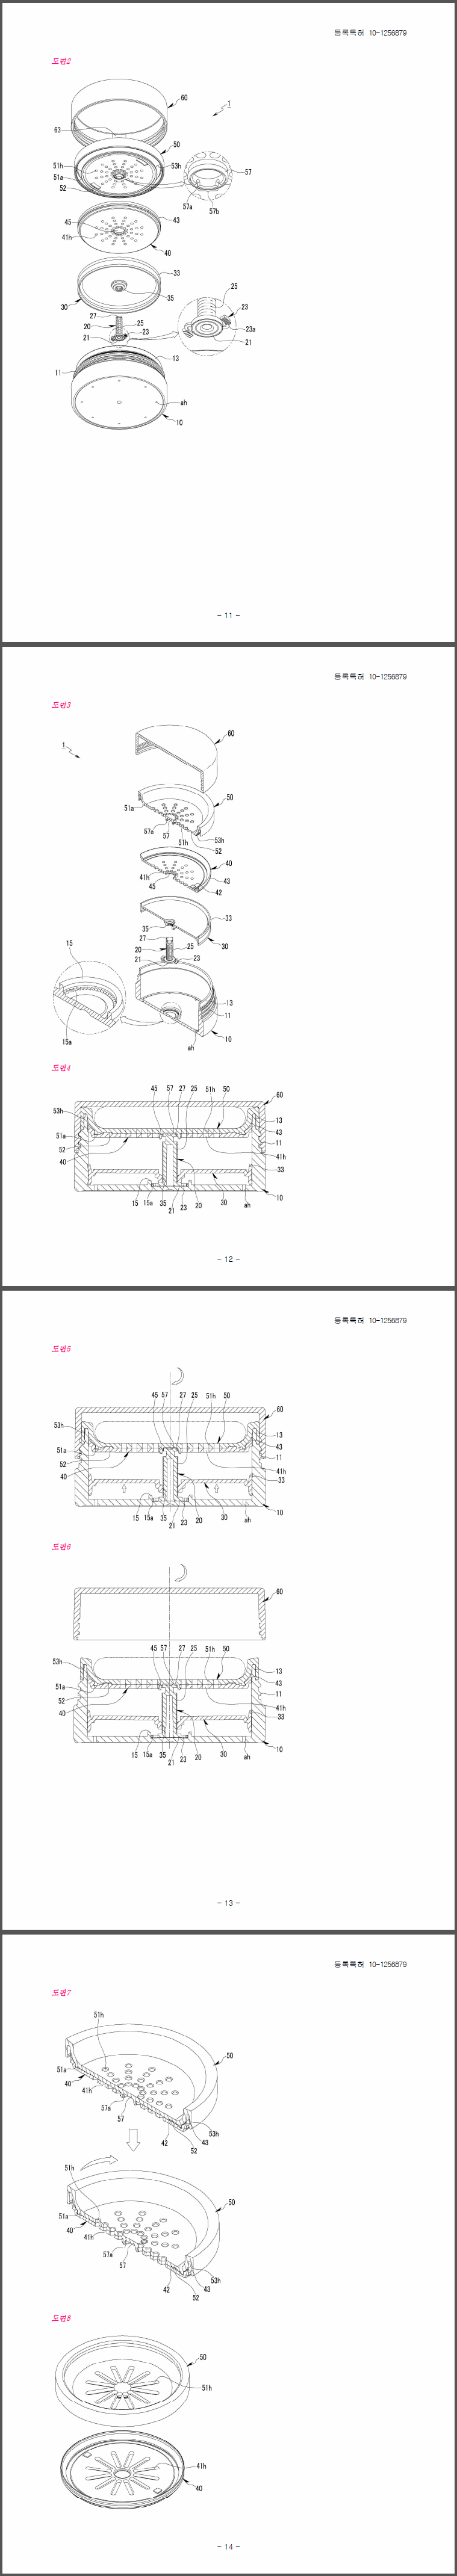 특허 제10-1256879호(화장용 파우더 용기, 정만택)